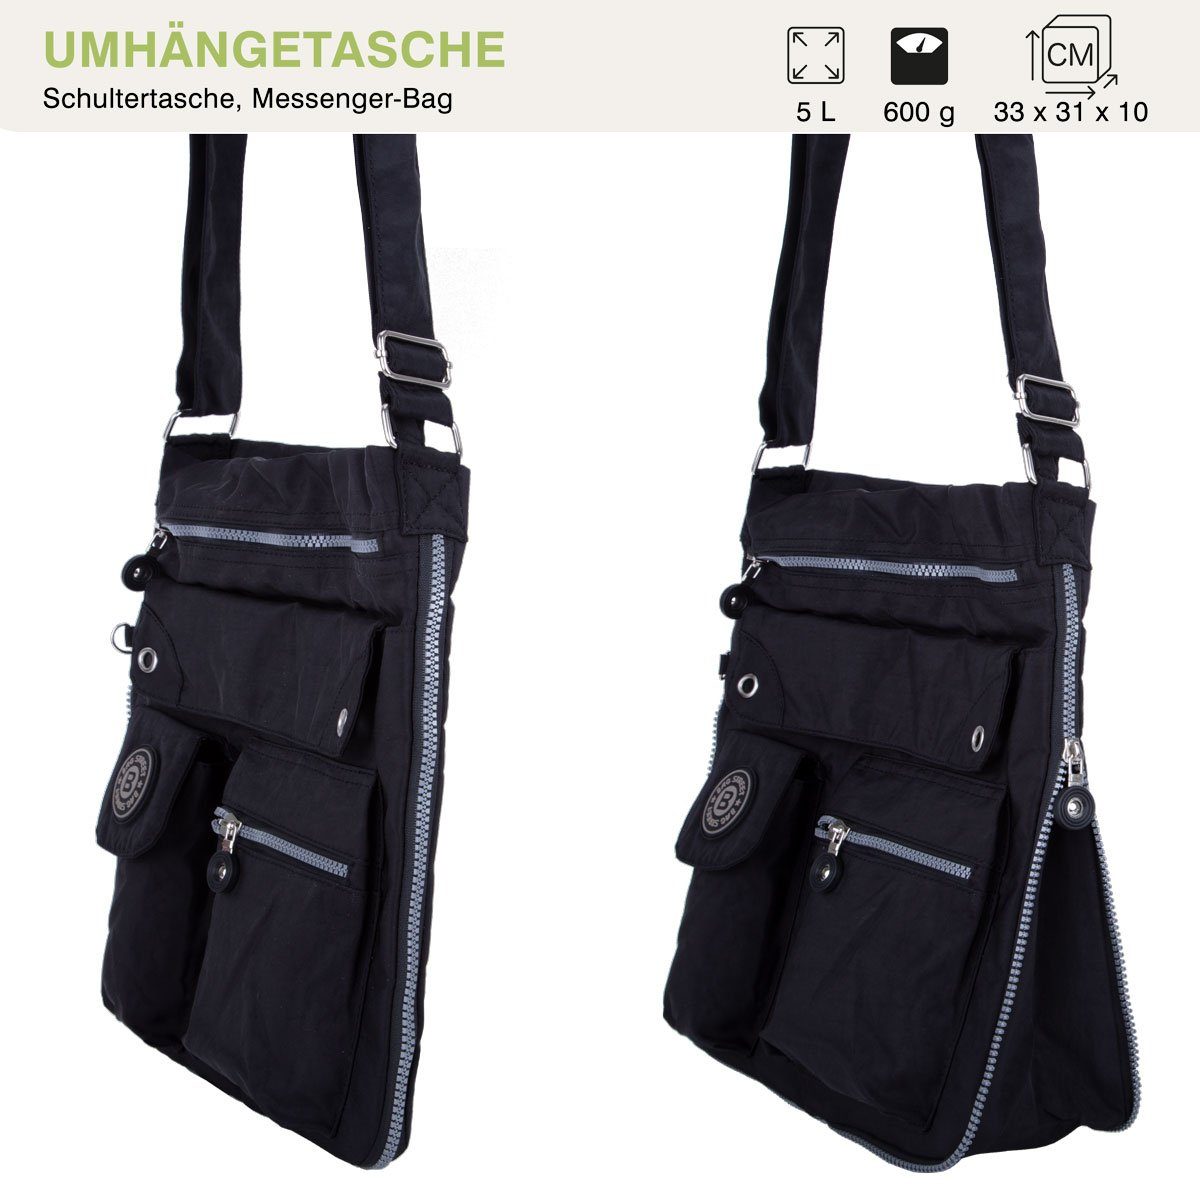 Bag Urlaub City-Tasche mit viel schwarz Kuriertasche Umhänge-Tasche Sportive Henkeltasche, compagno Reise Stauraum